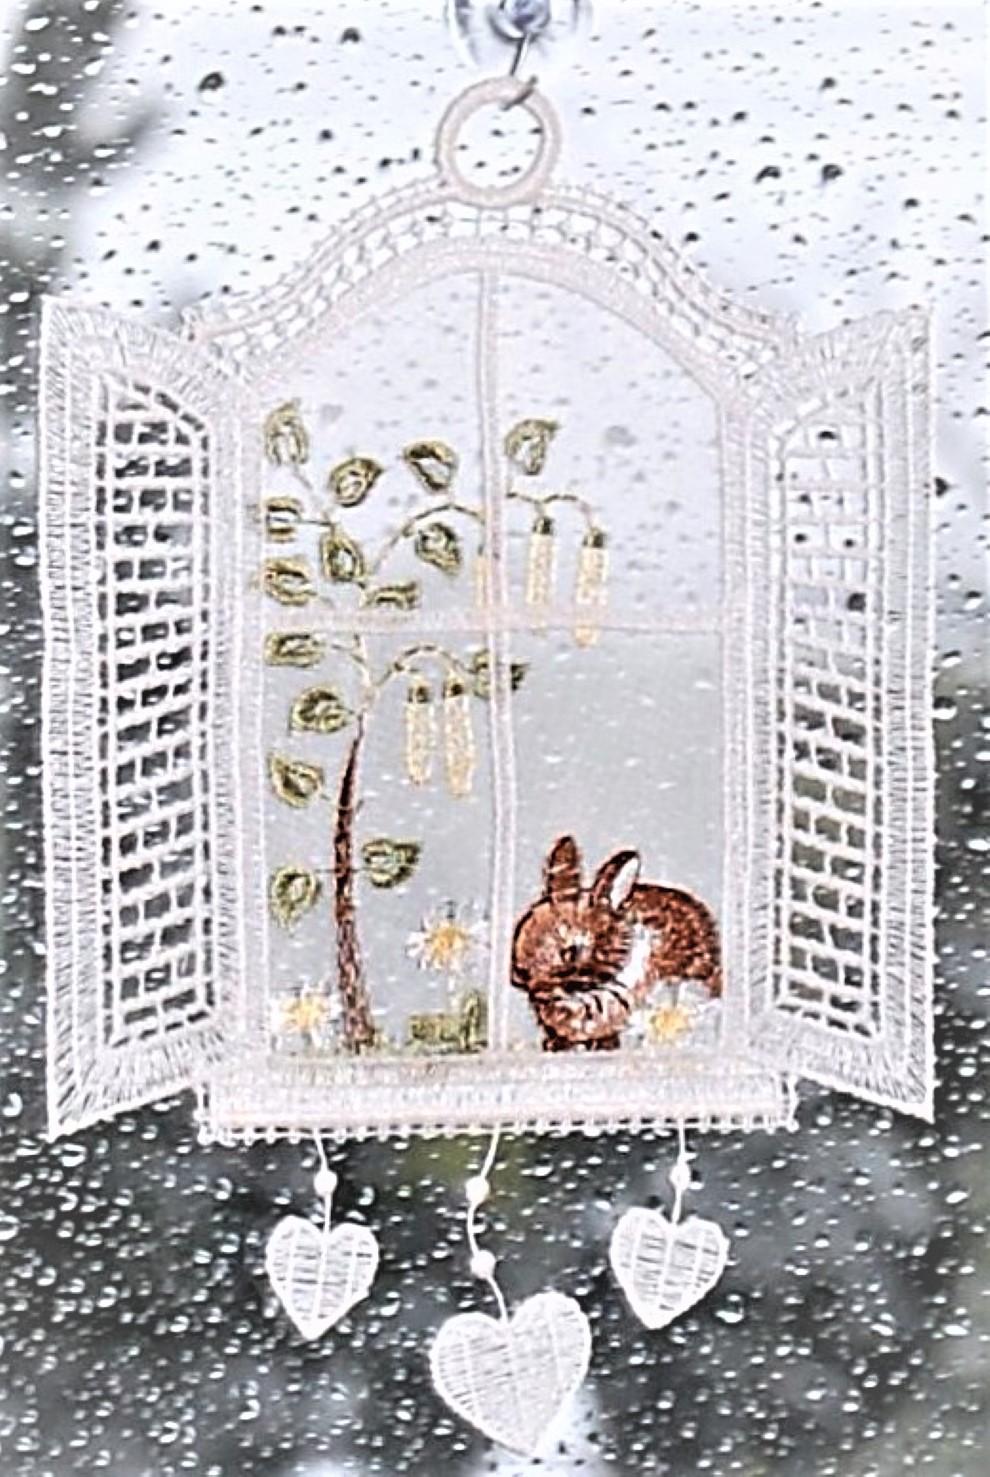 Plauener Stickerei Fensterbild Spitze Schmetterling Fensterdeko Frühling  Sommer | eBay